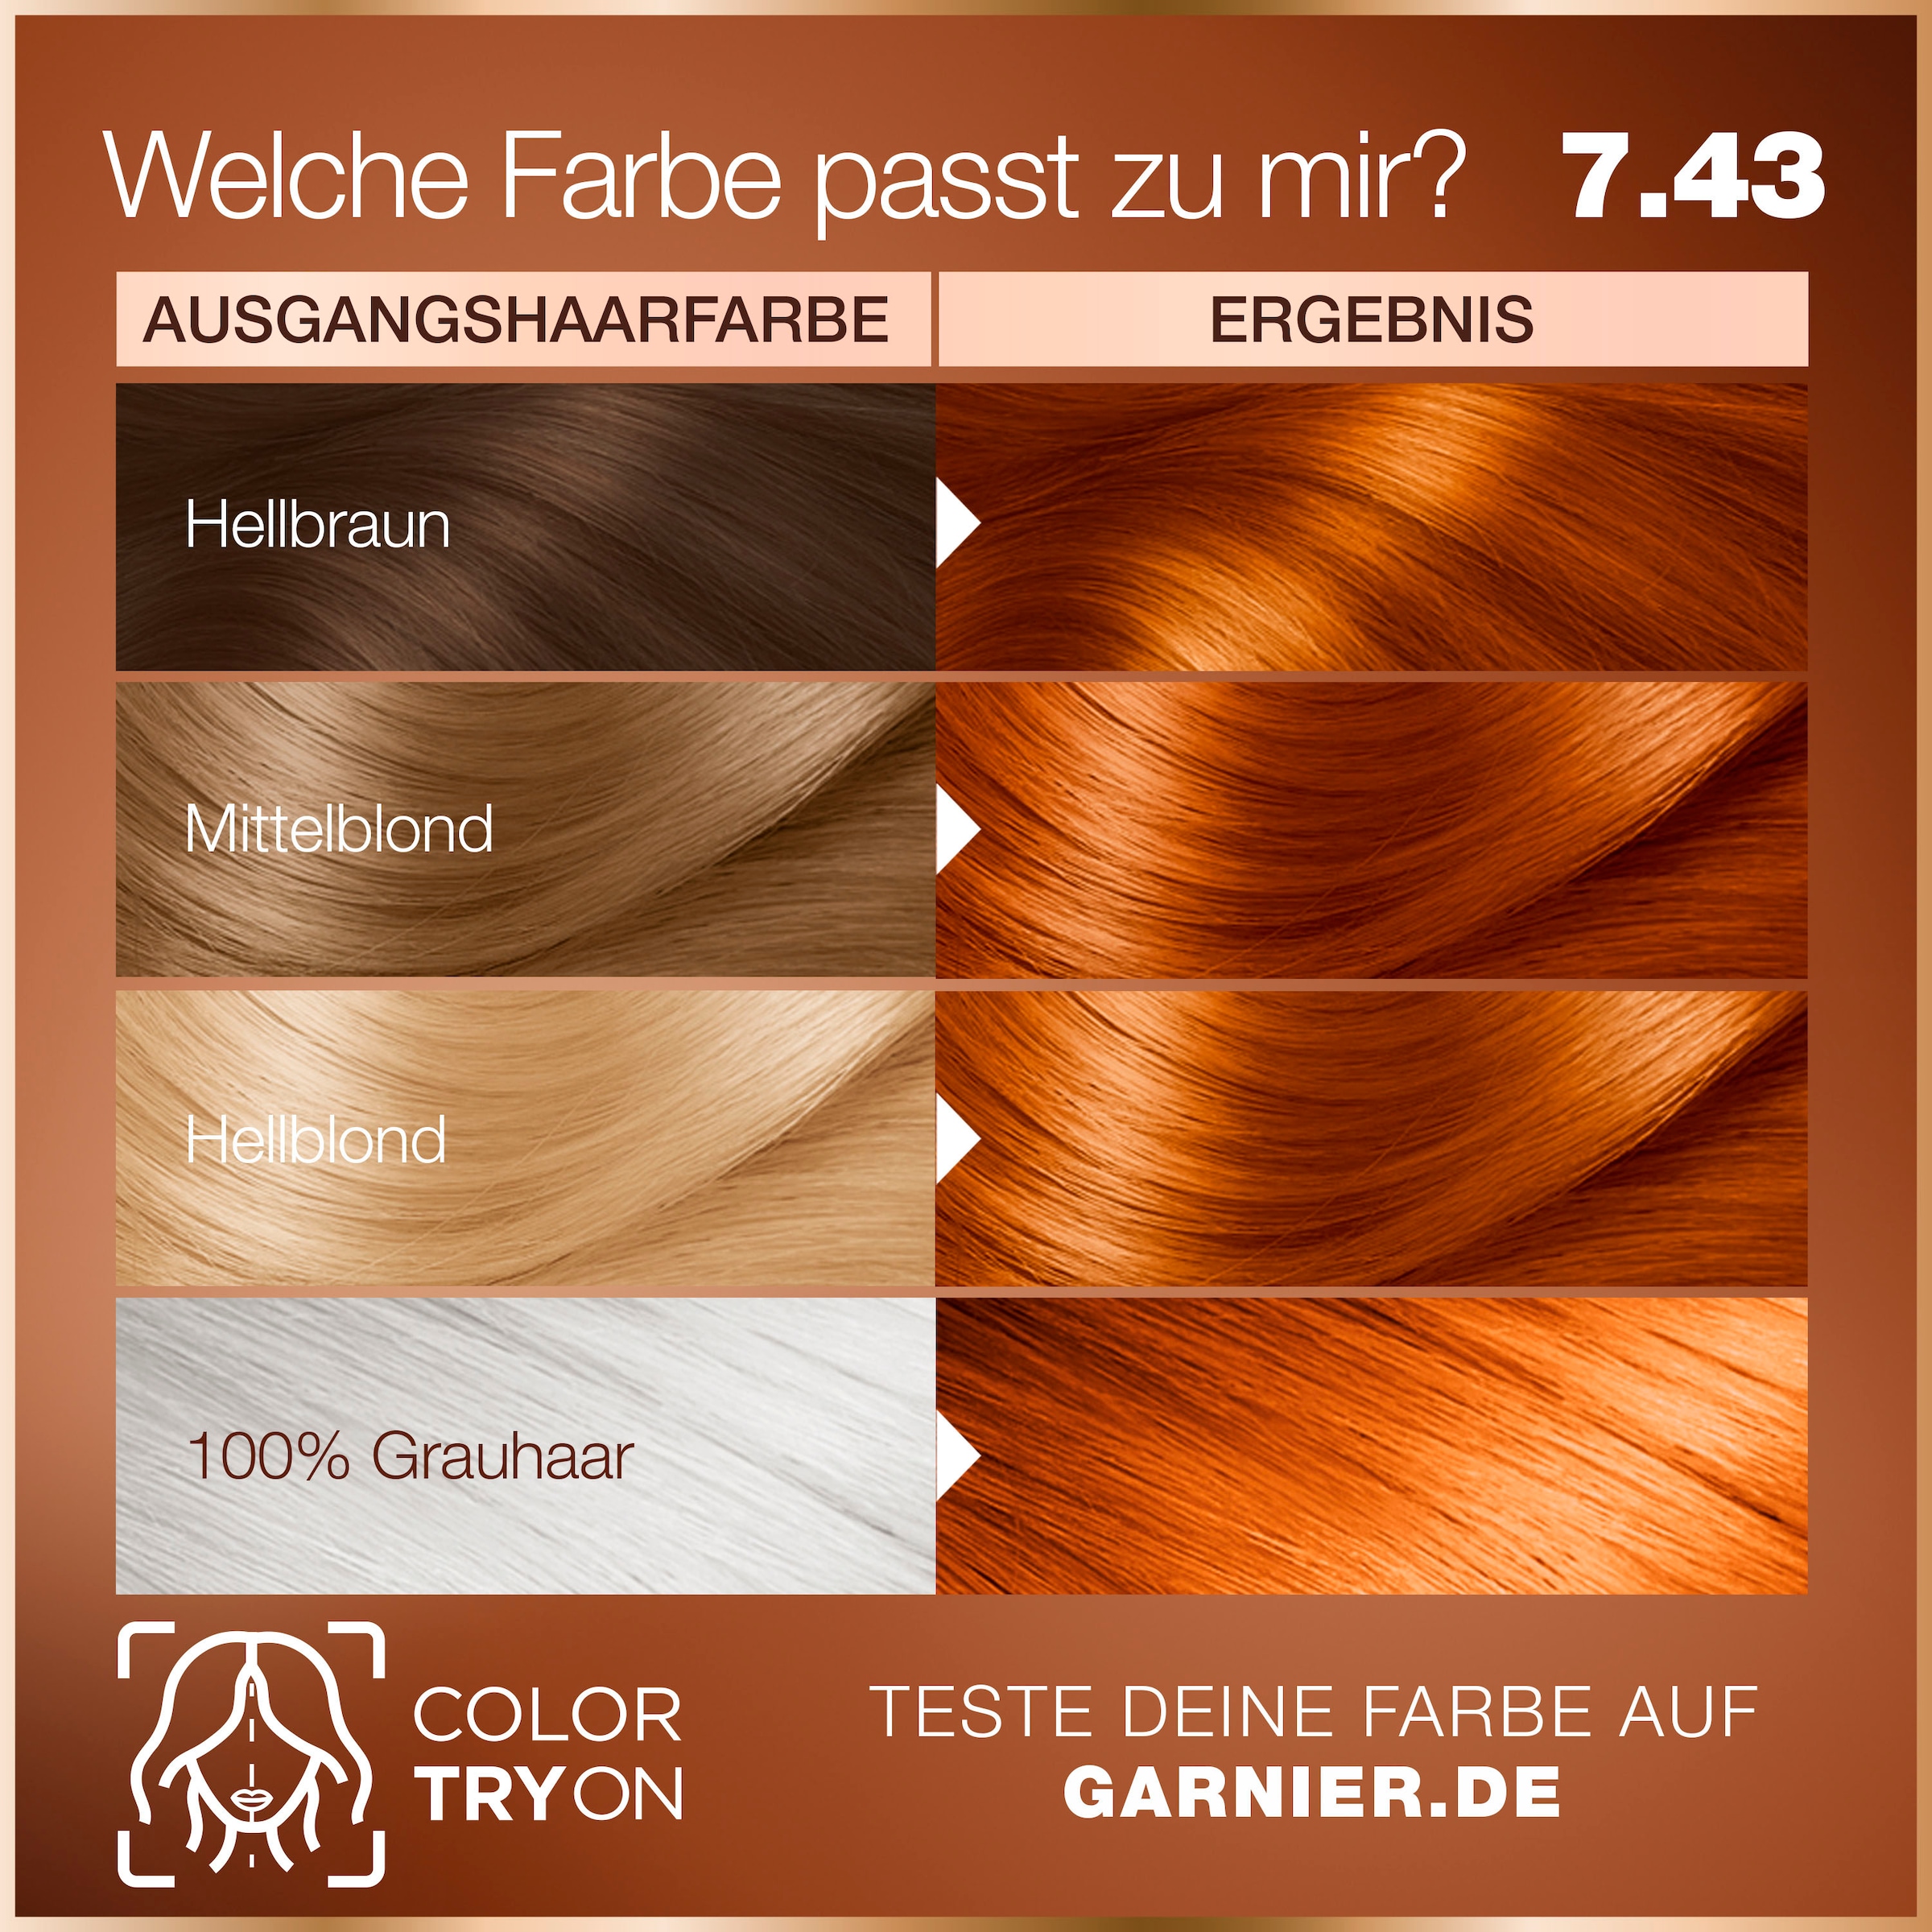 Dauerhafte bestellen Coloration GARNIER Online »Garnier im OTTO GOOD Haarfarbe« Shop